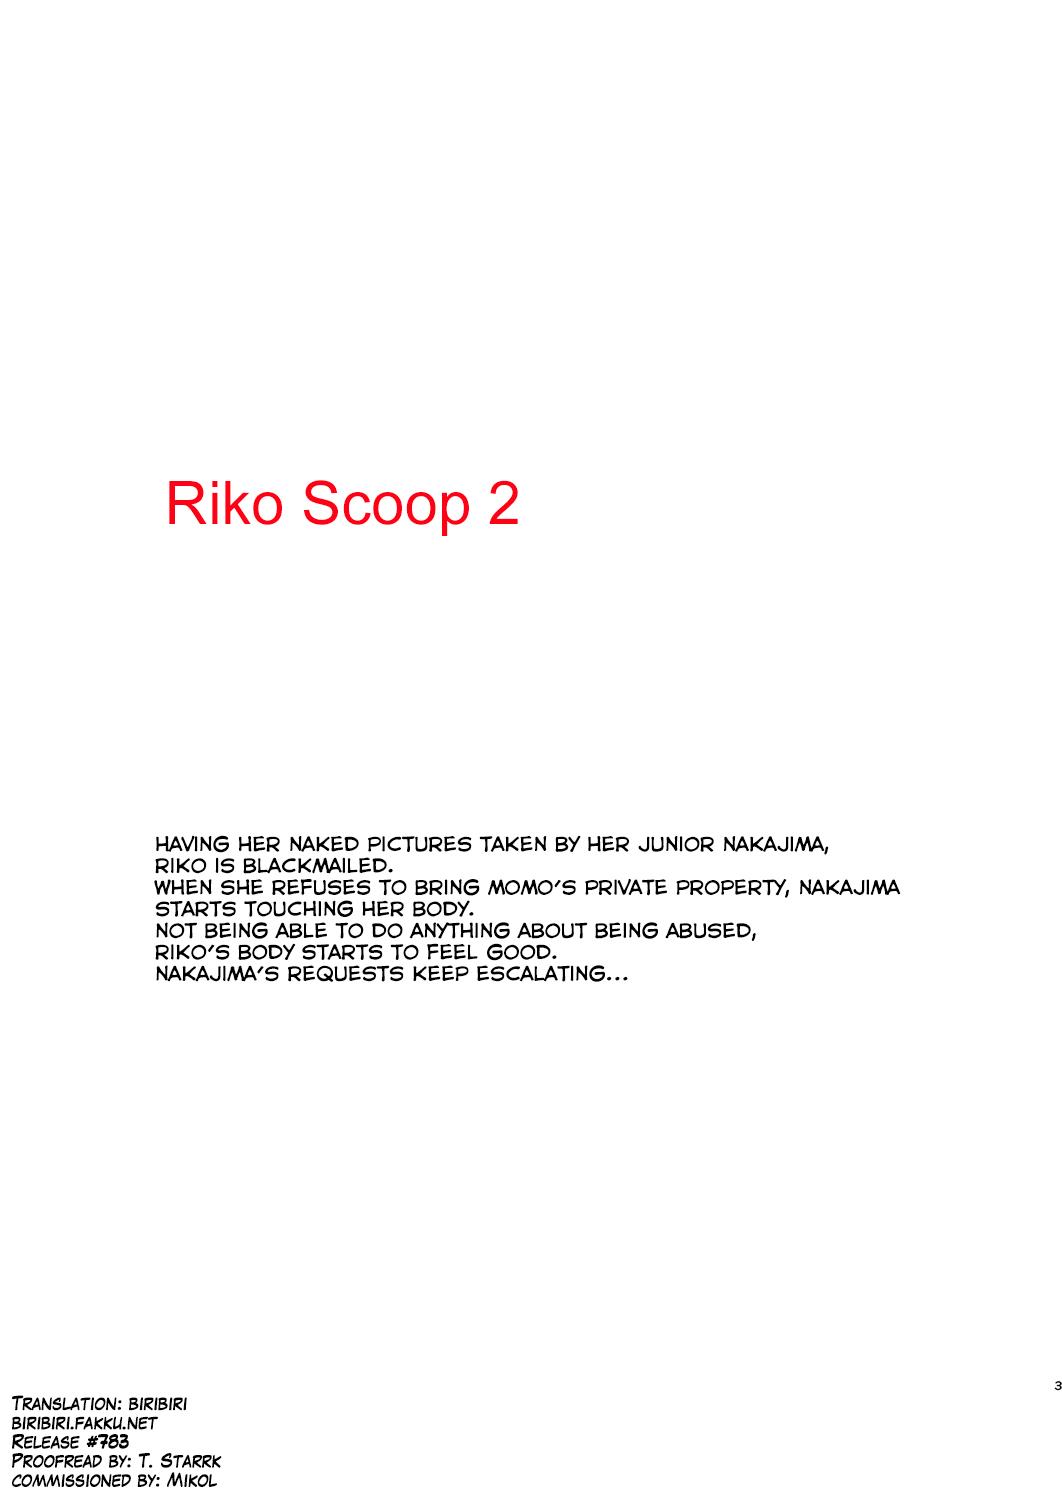 Riko Scoop 2 2